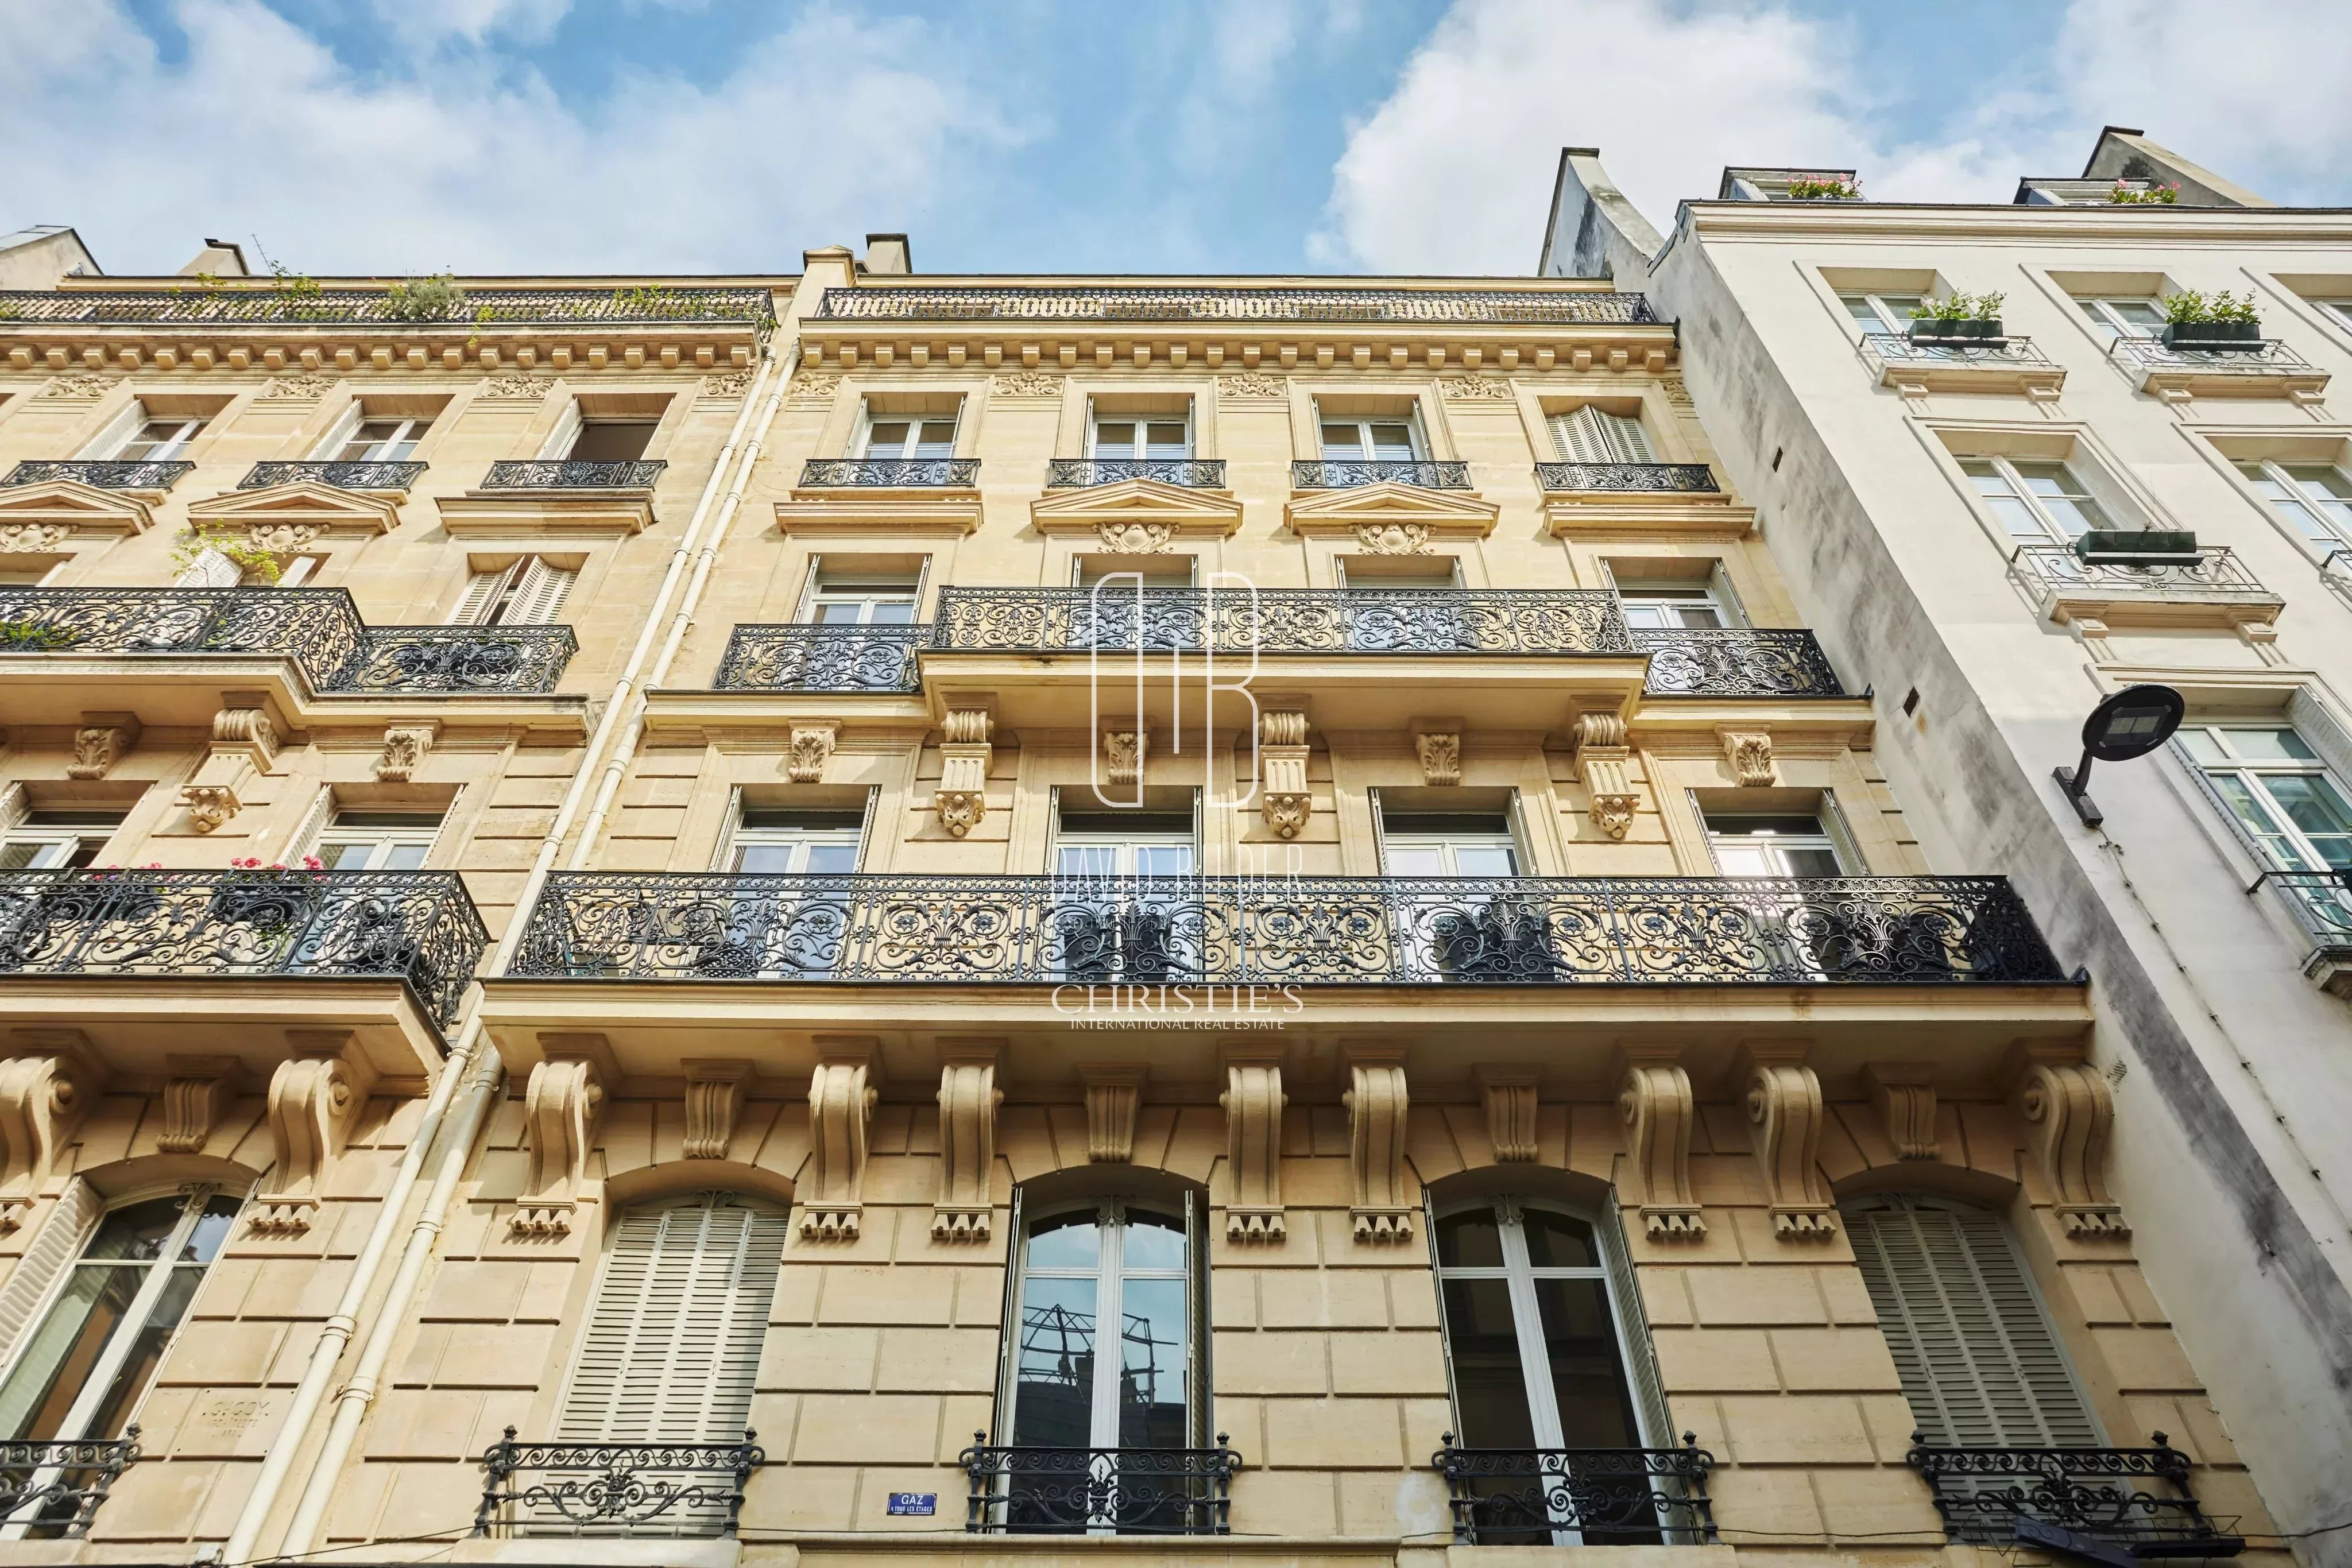 Paris 6th District – A 1100 sqm building in Saint-Germain-des-Prés